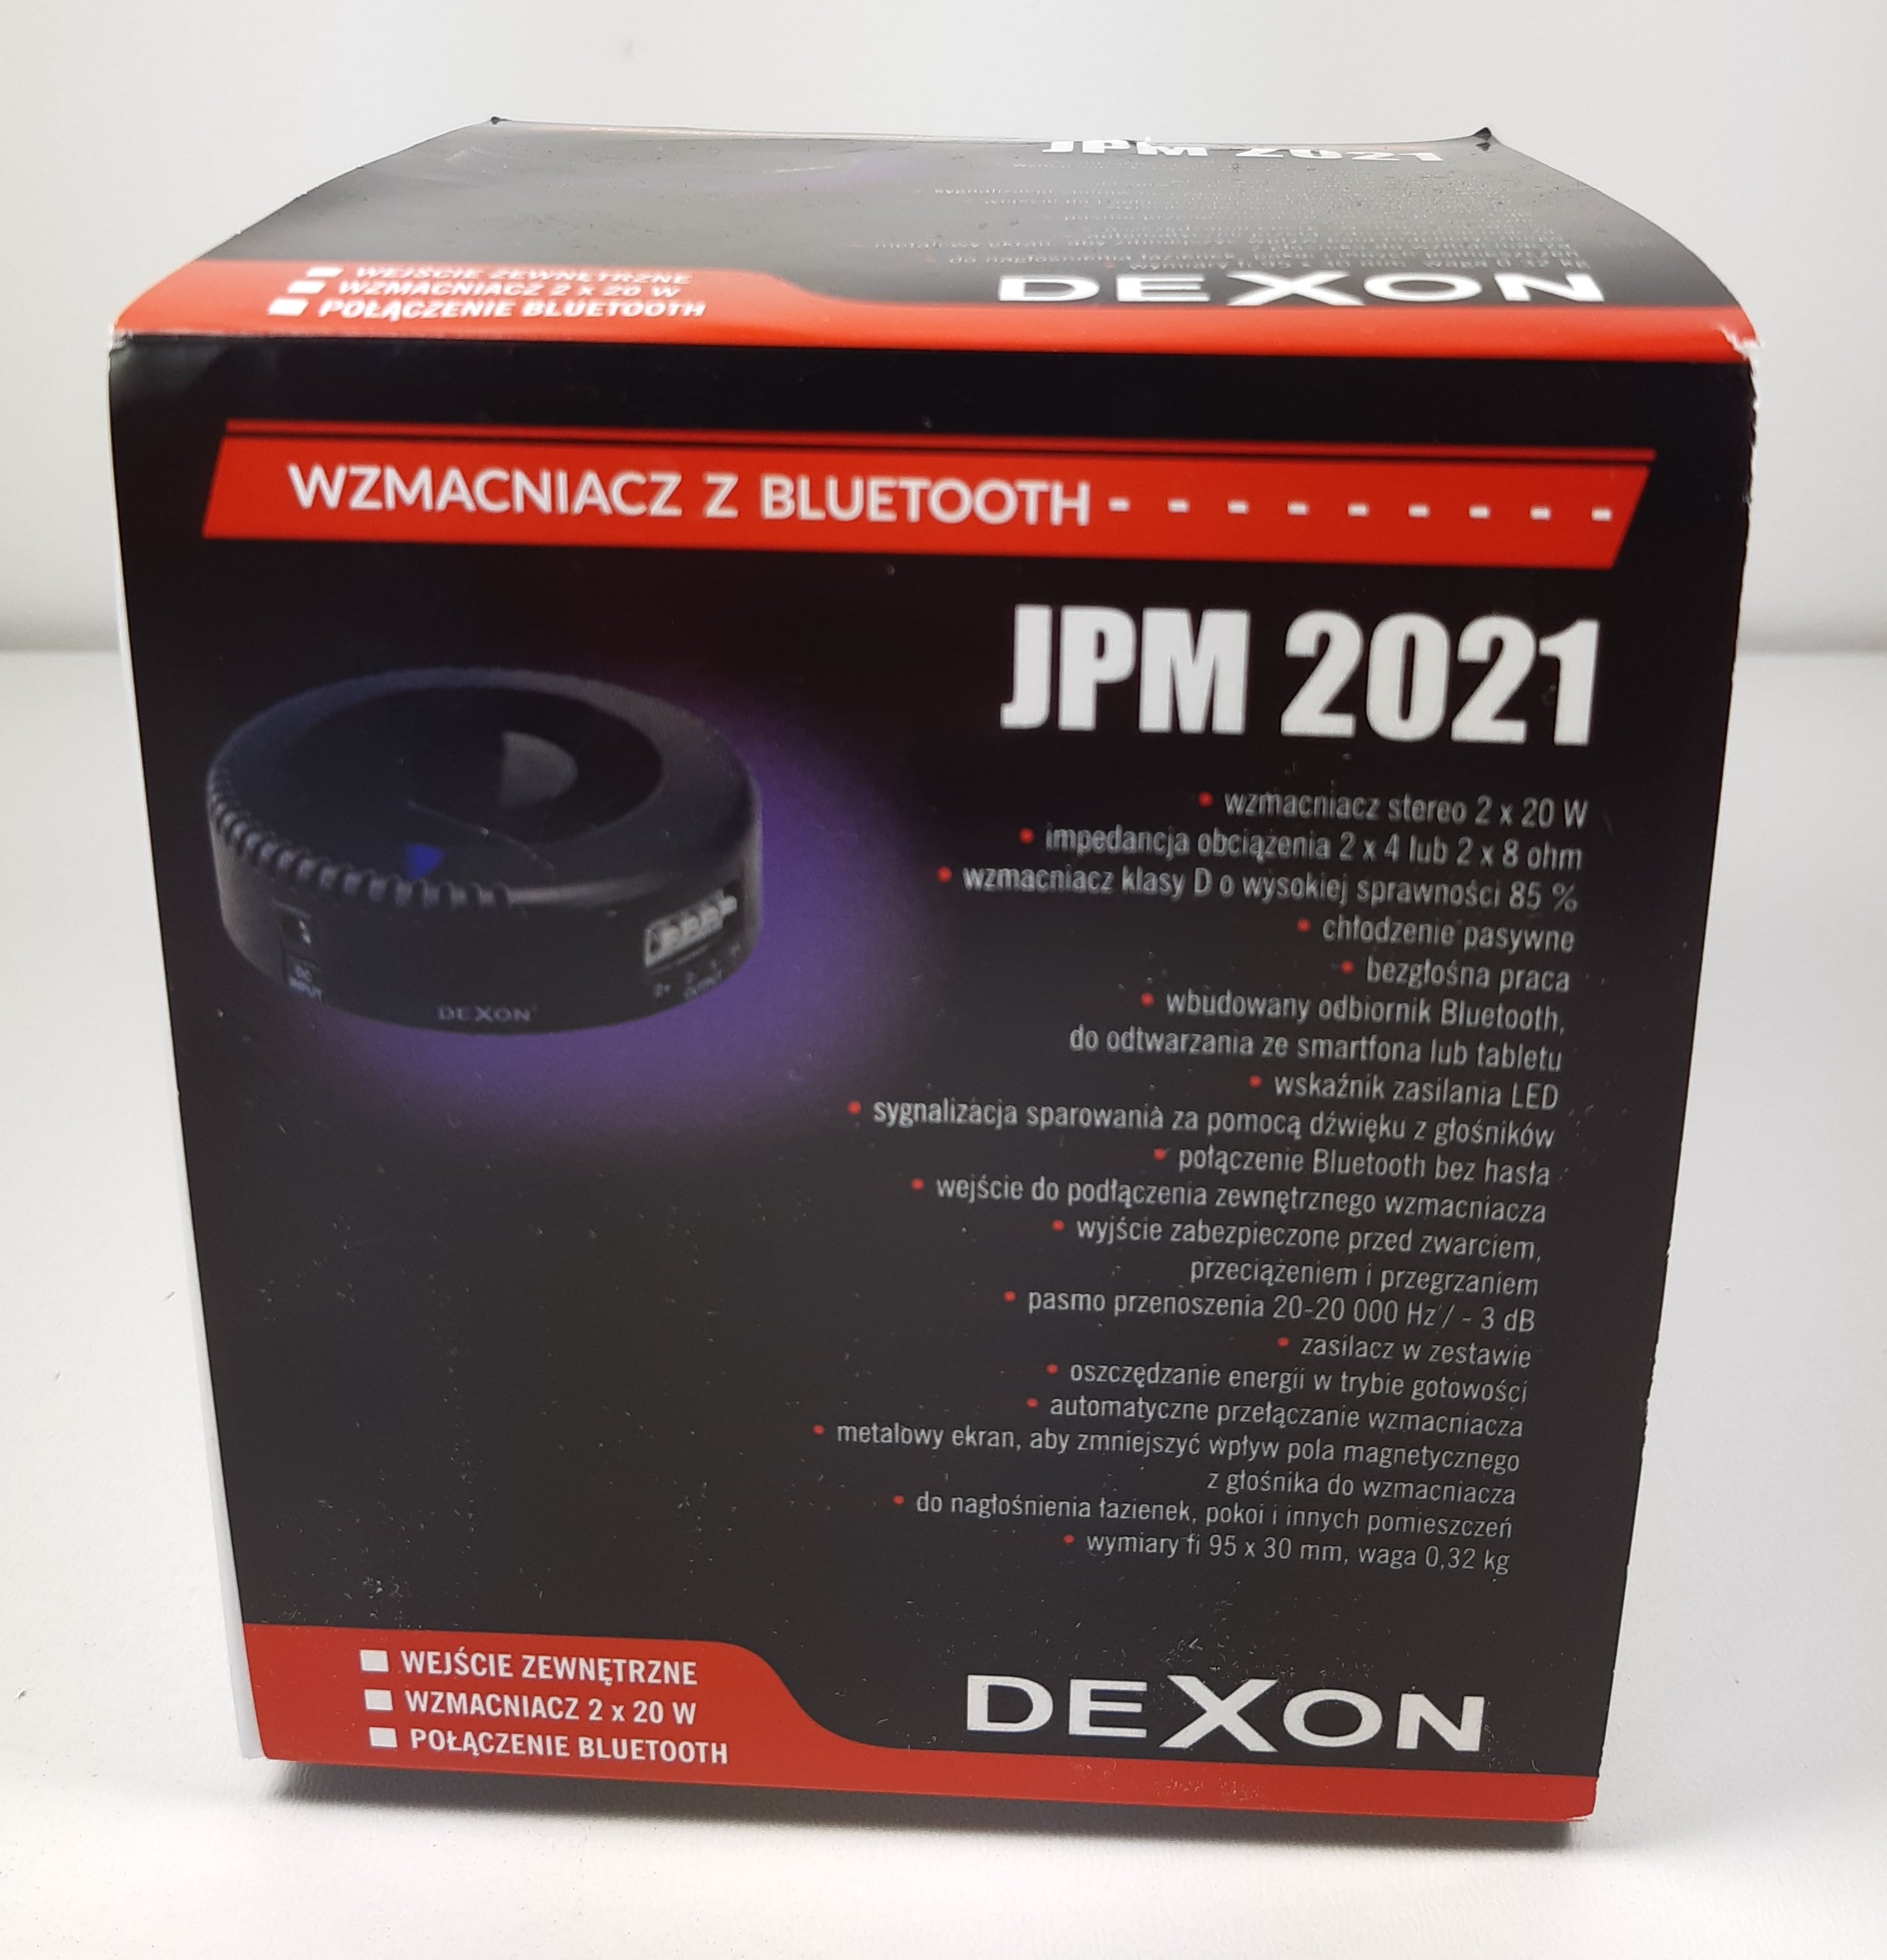 Dexon JPM 2021 Bluetooth box